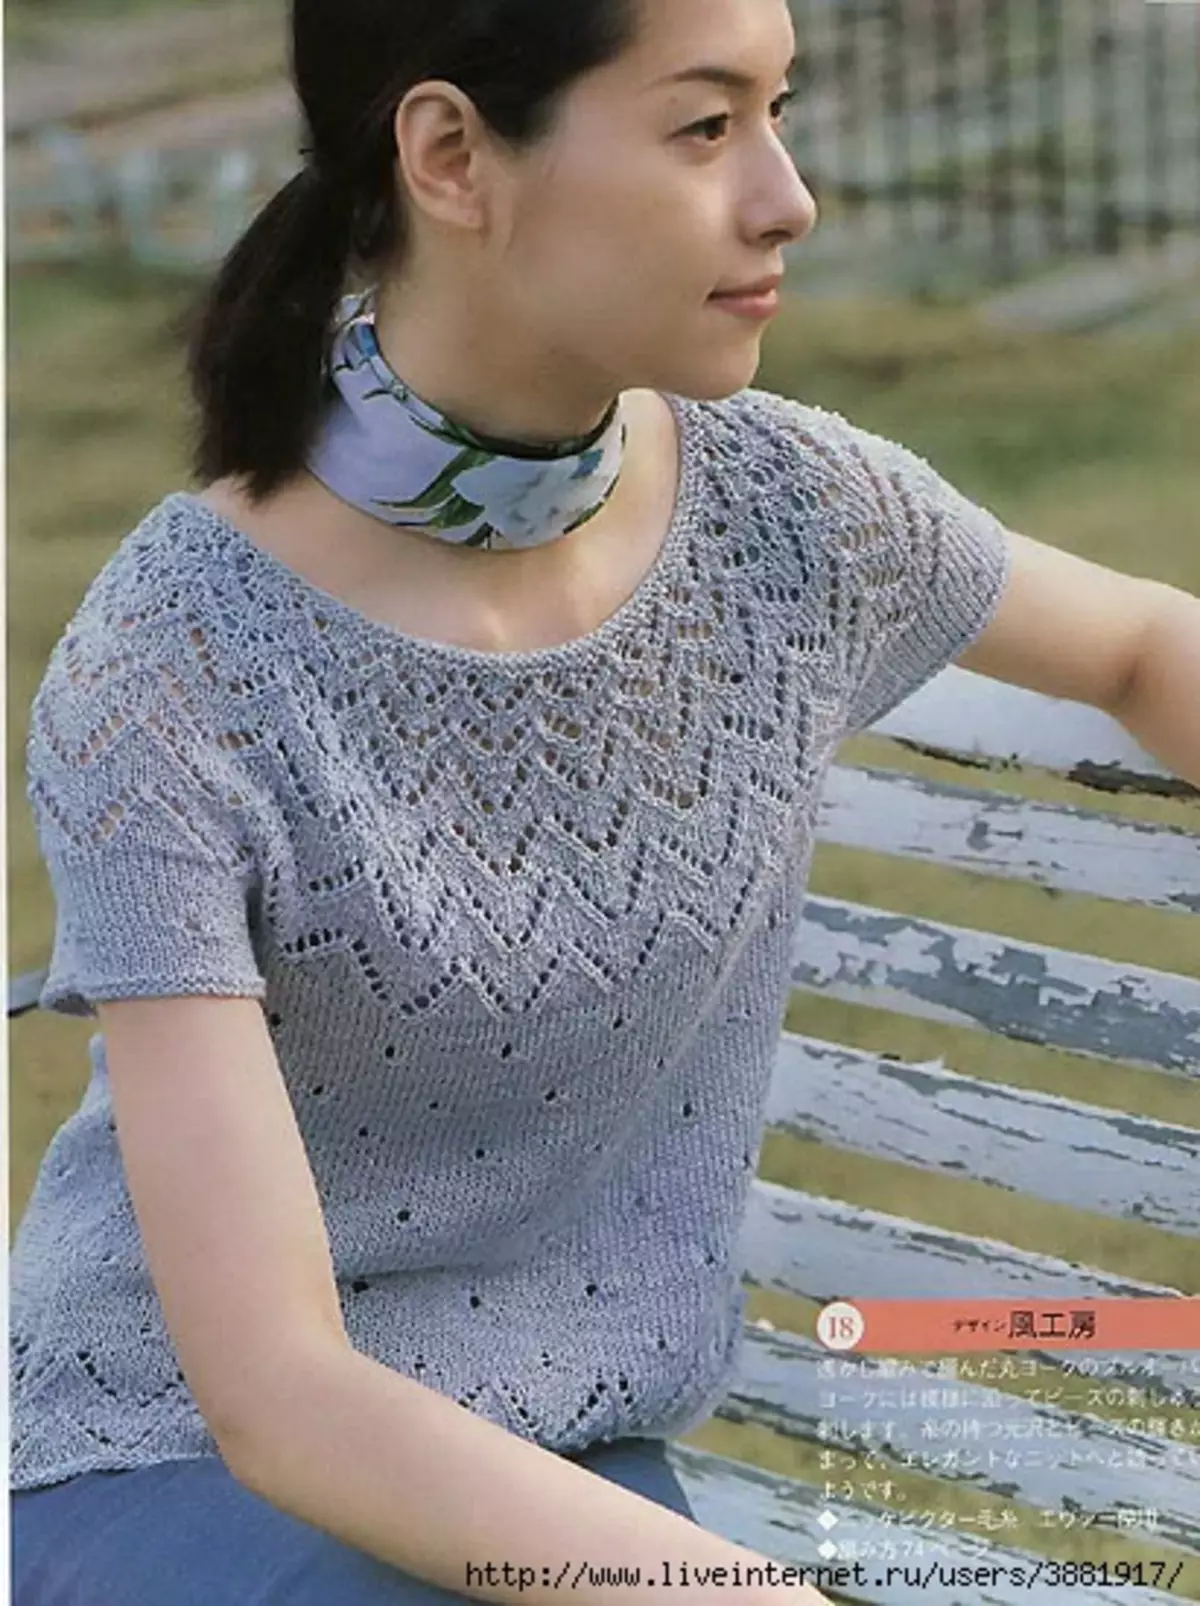 Coquette tròn với kim đan: áo len màu ngọc lam cho một cô gái